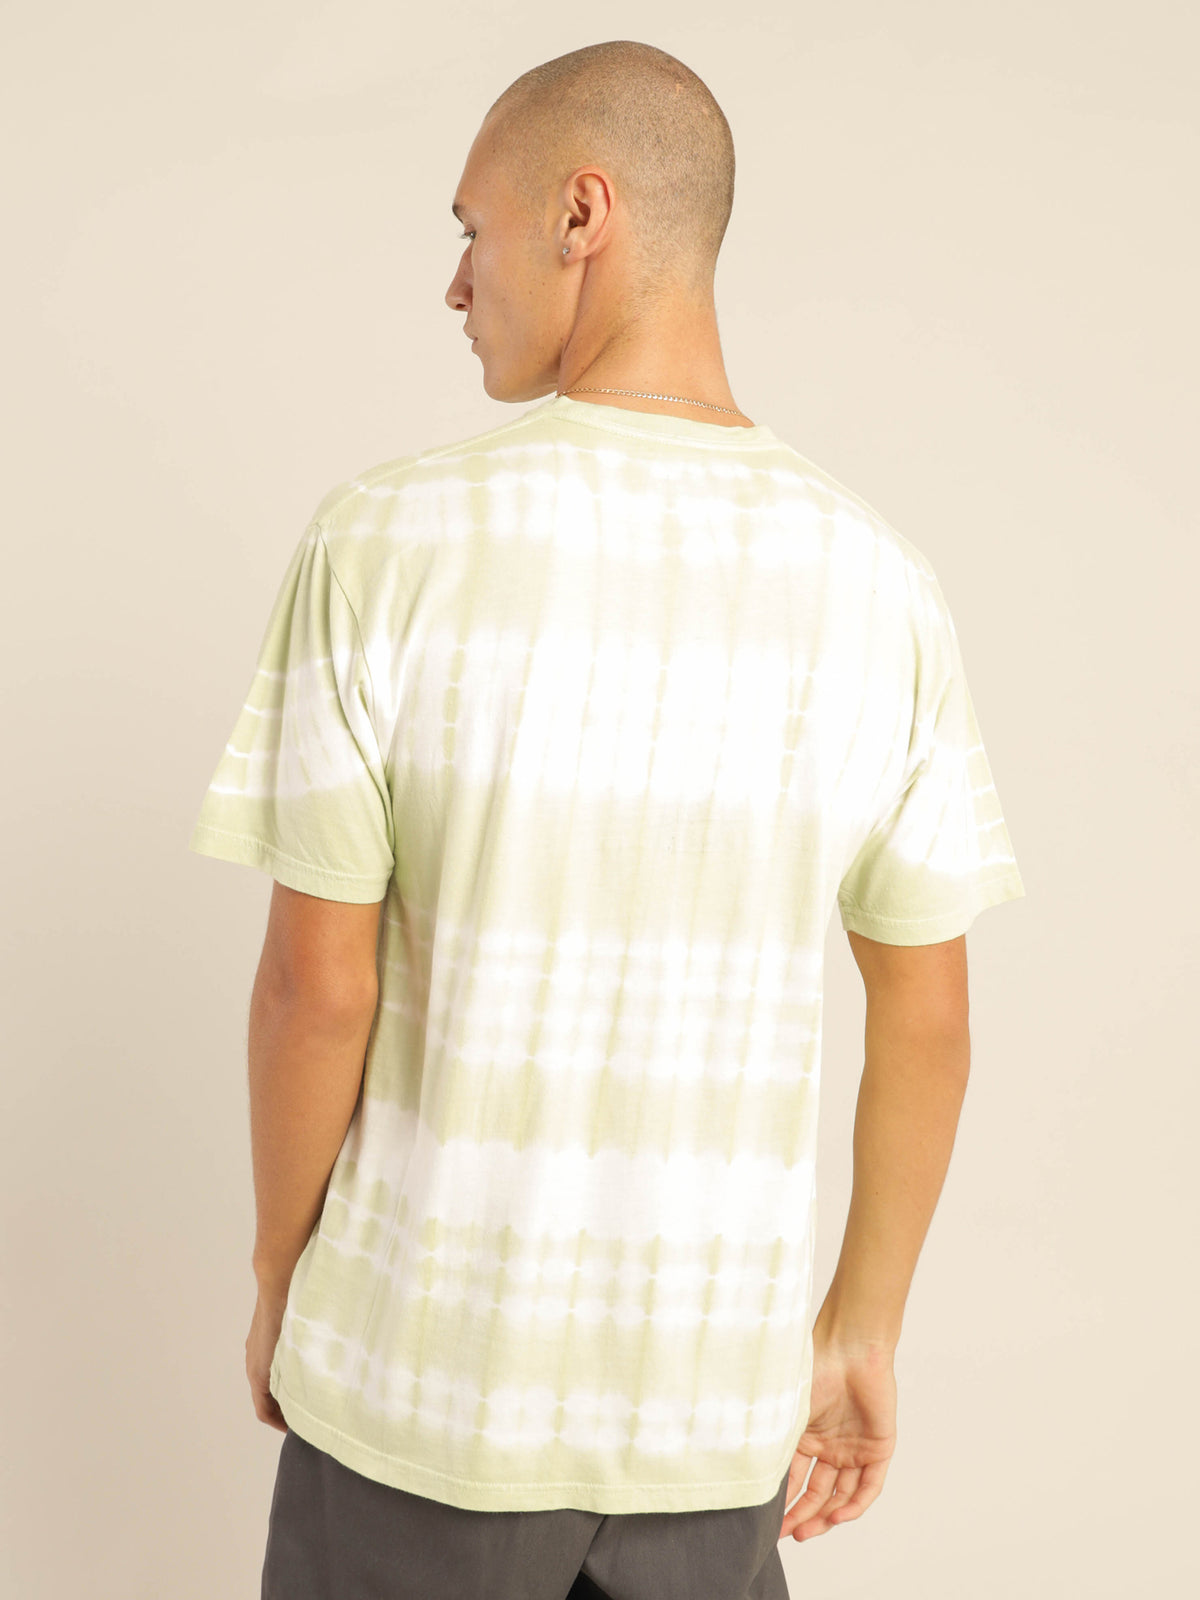 Piece of Mind Tie Dye T-Shirt in Celadon Green